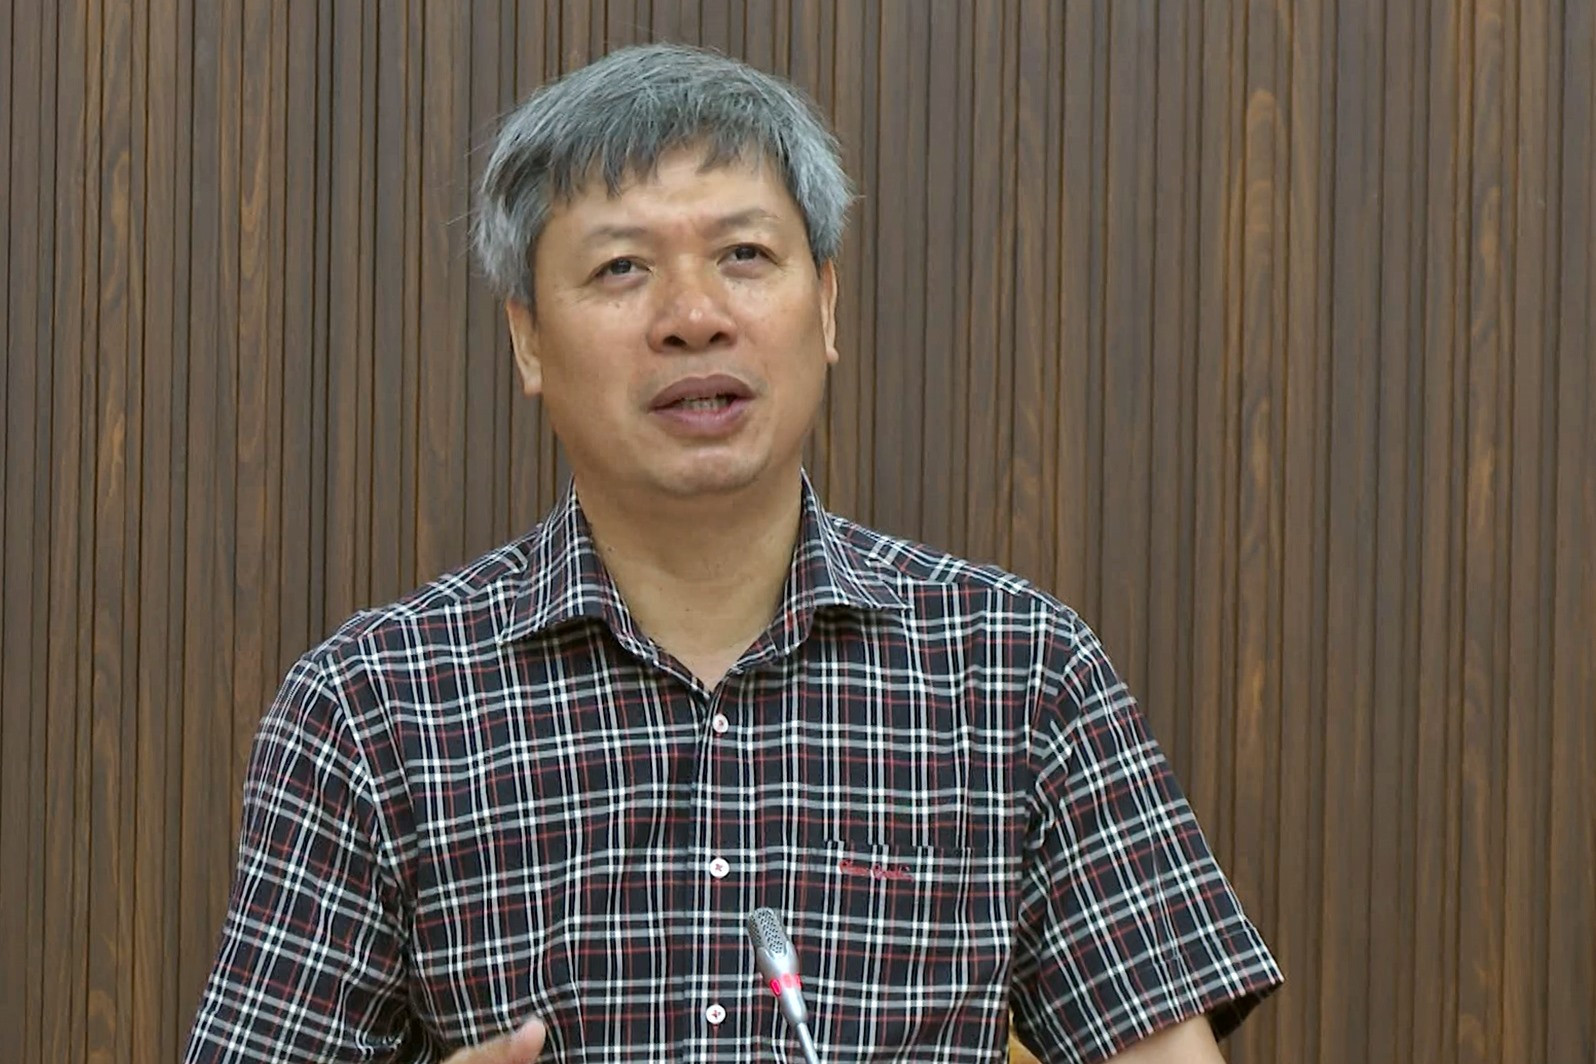 Phó Chủ tịch UBND tỉnh Hồ Quang Bửu khẳng định, tỉnh luôn quan tâm nhất là nông nghiệp và yêu cầu các cơ quan hữu quan của tỉnh phải giải quyết rốt ráo các thắc mắc, kiến nghị của nông dân. Ảnh: S.Đ